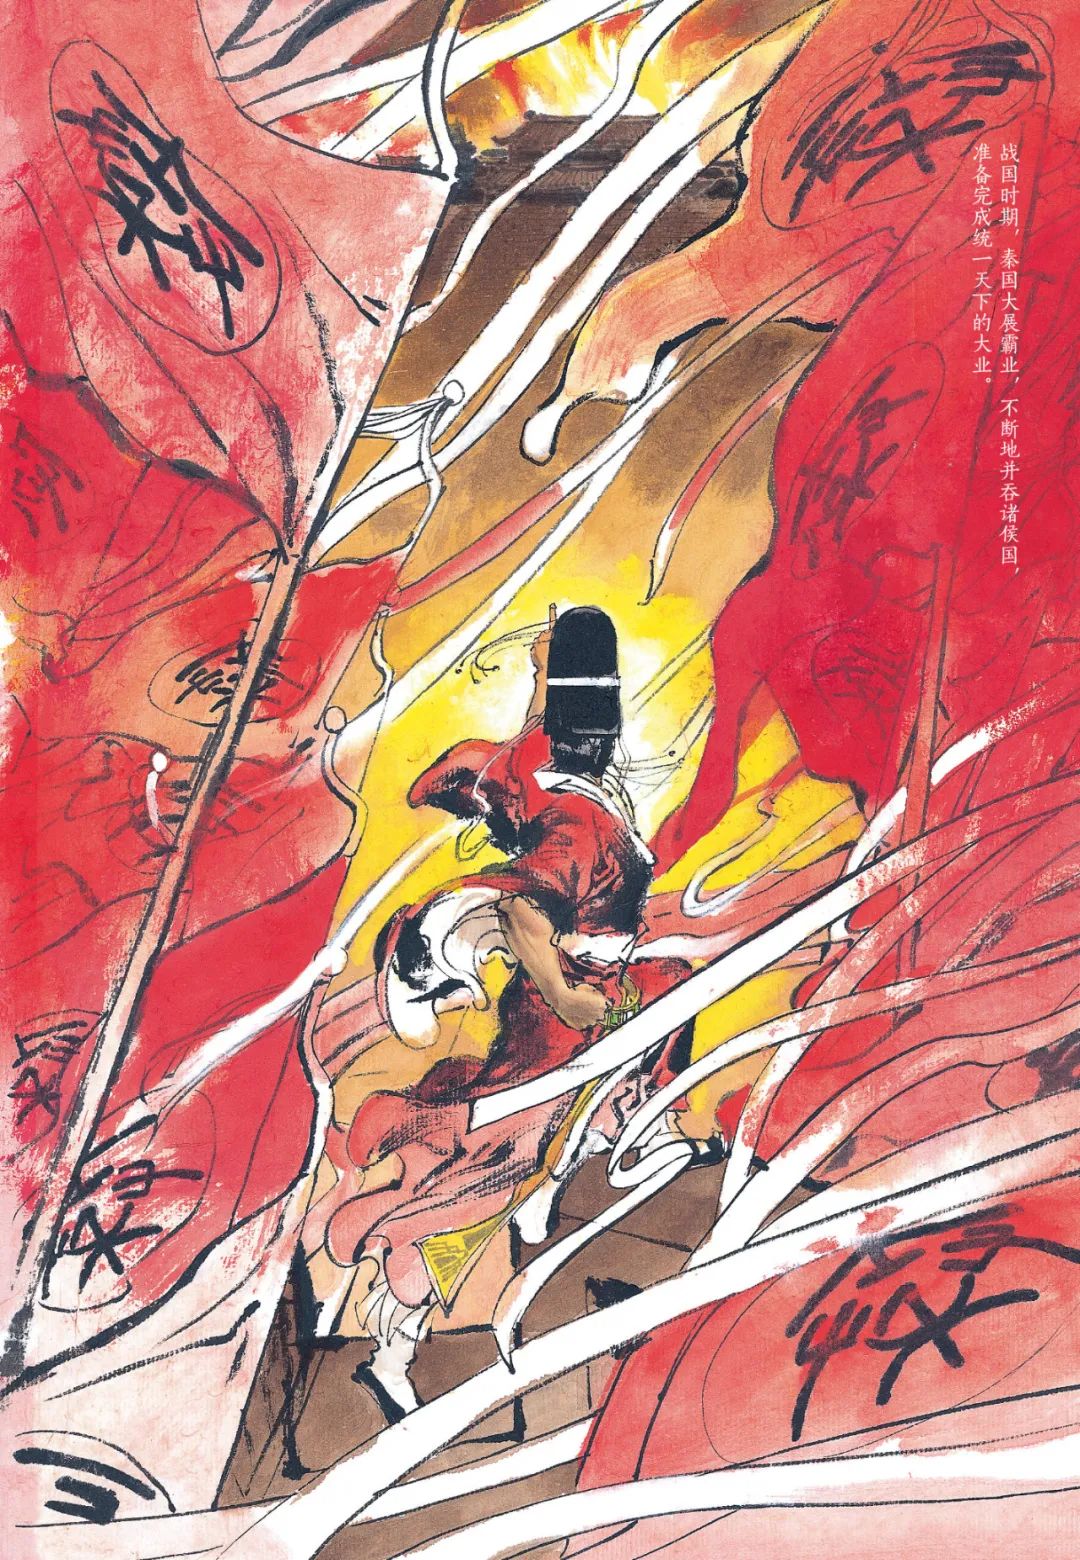 500幅彩绘 跨越2000年的山河岁月 首位震撼日本的国漫大师 成名作简体中文版正式引进 鸟人与鱼 微信公众号文章阅读 Wemp